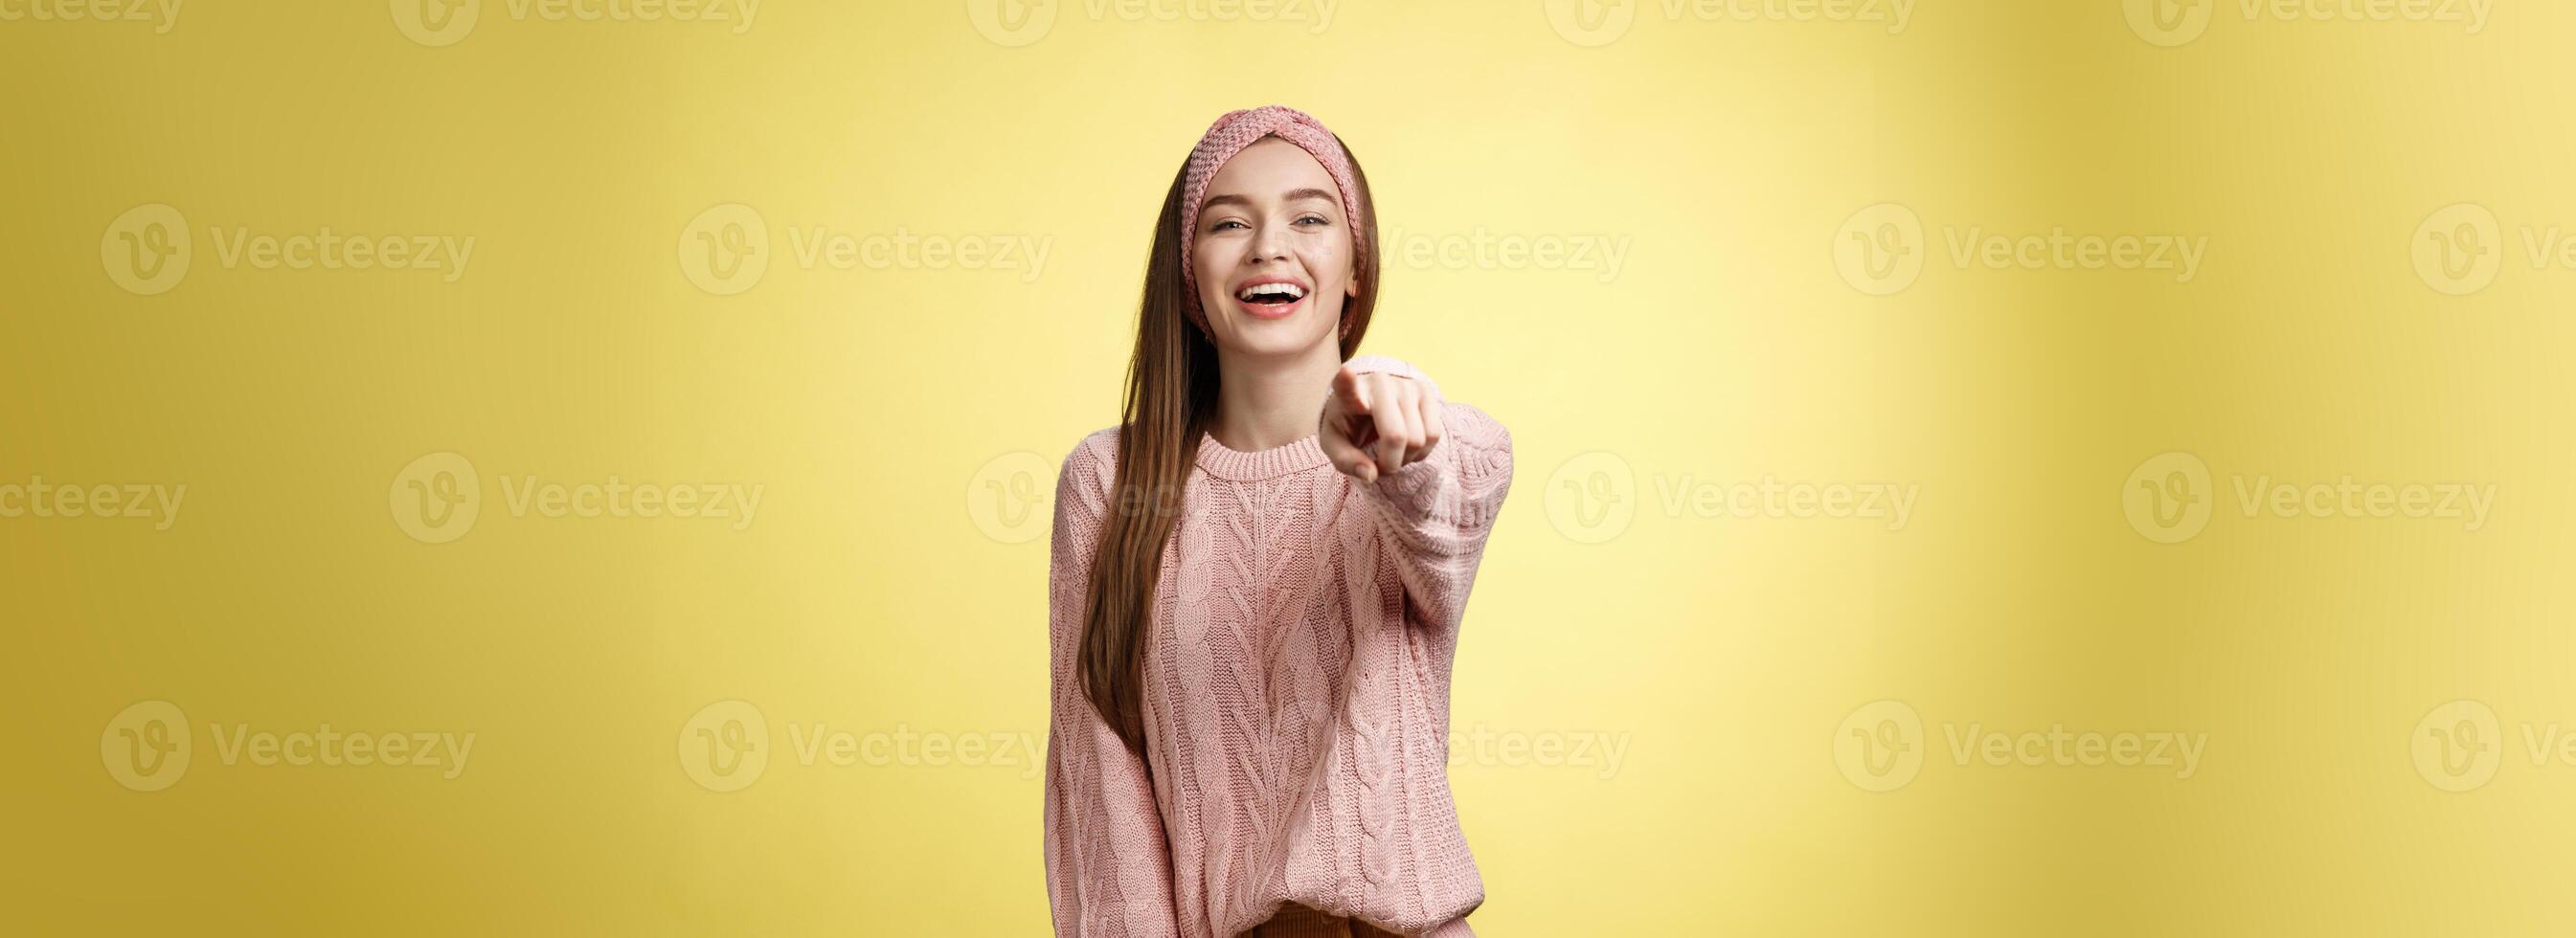 divertido encantador concurso jovem europeu namorada zombando tendo Diversão do alguém apontando dedo às Câmera rindo sobre engraçado situação, rindo, zombando contra amarelo fundo foto